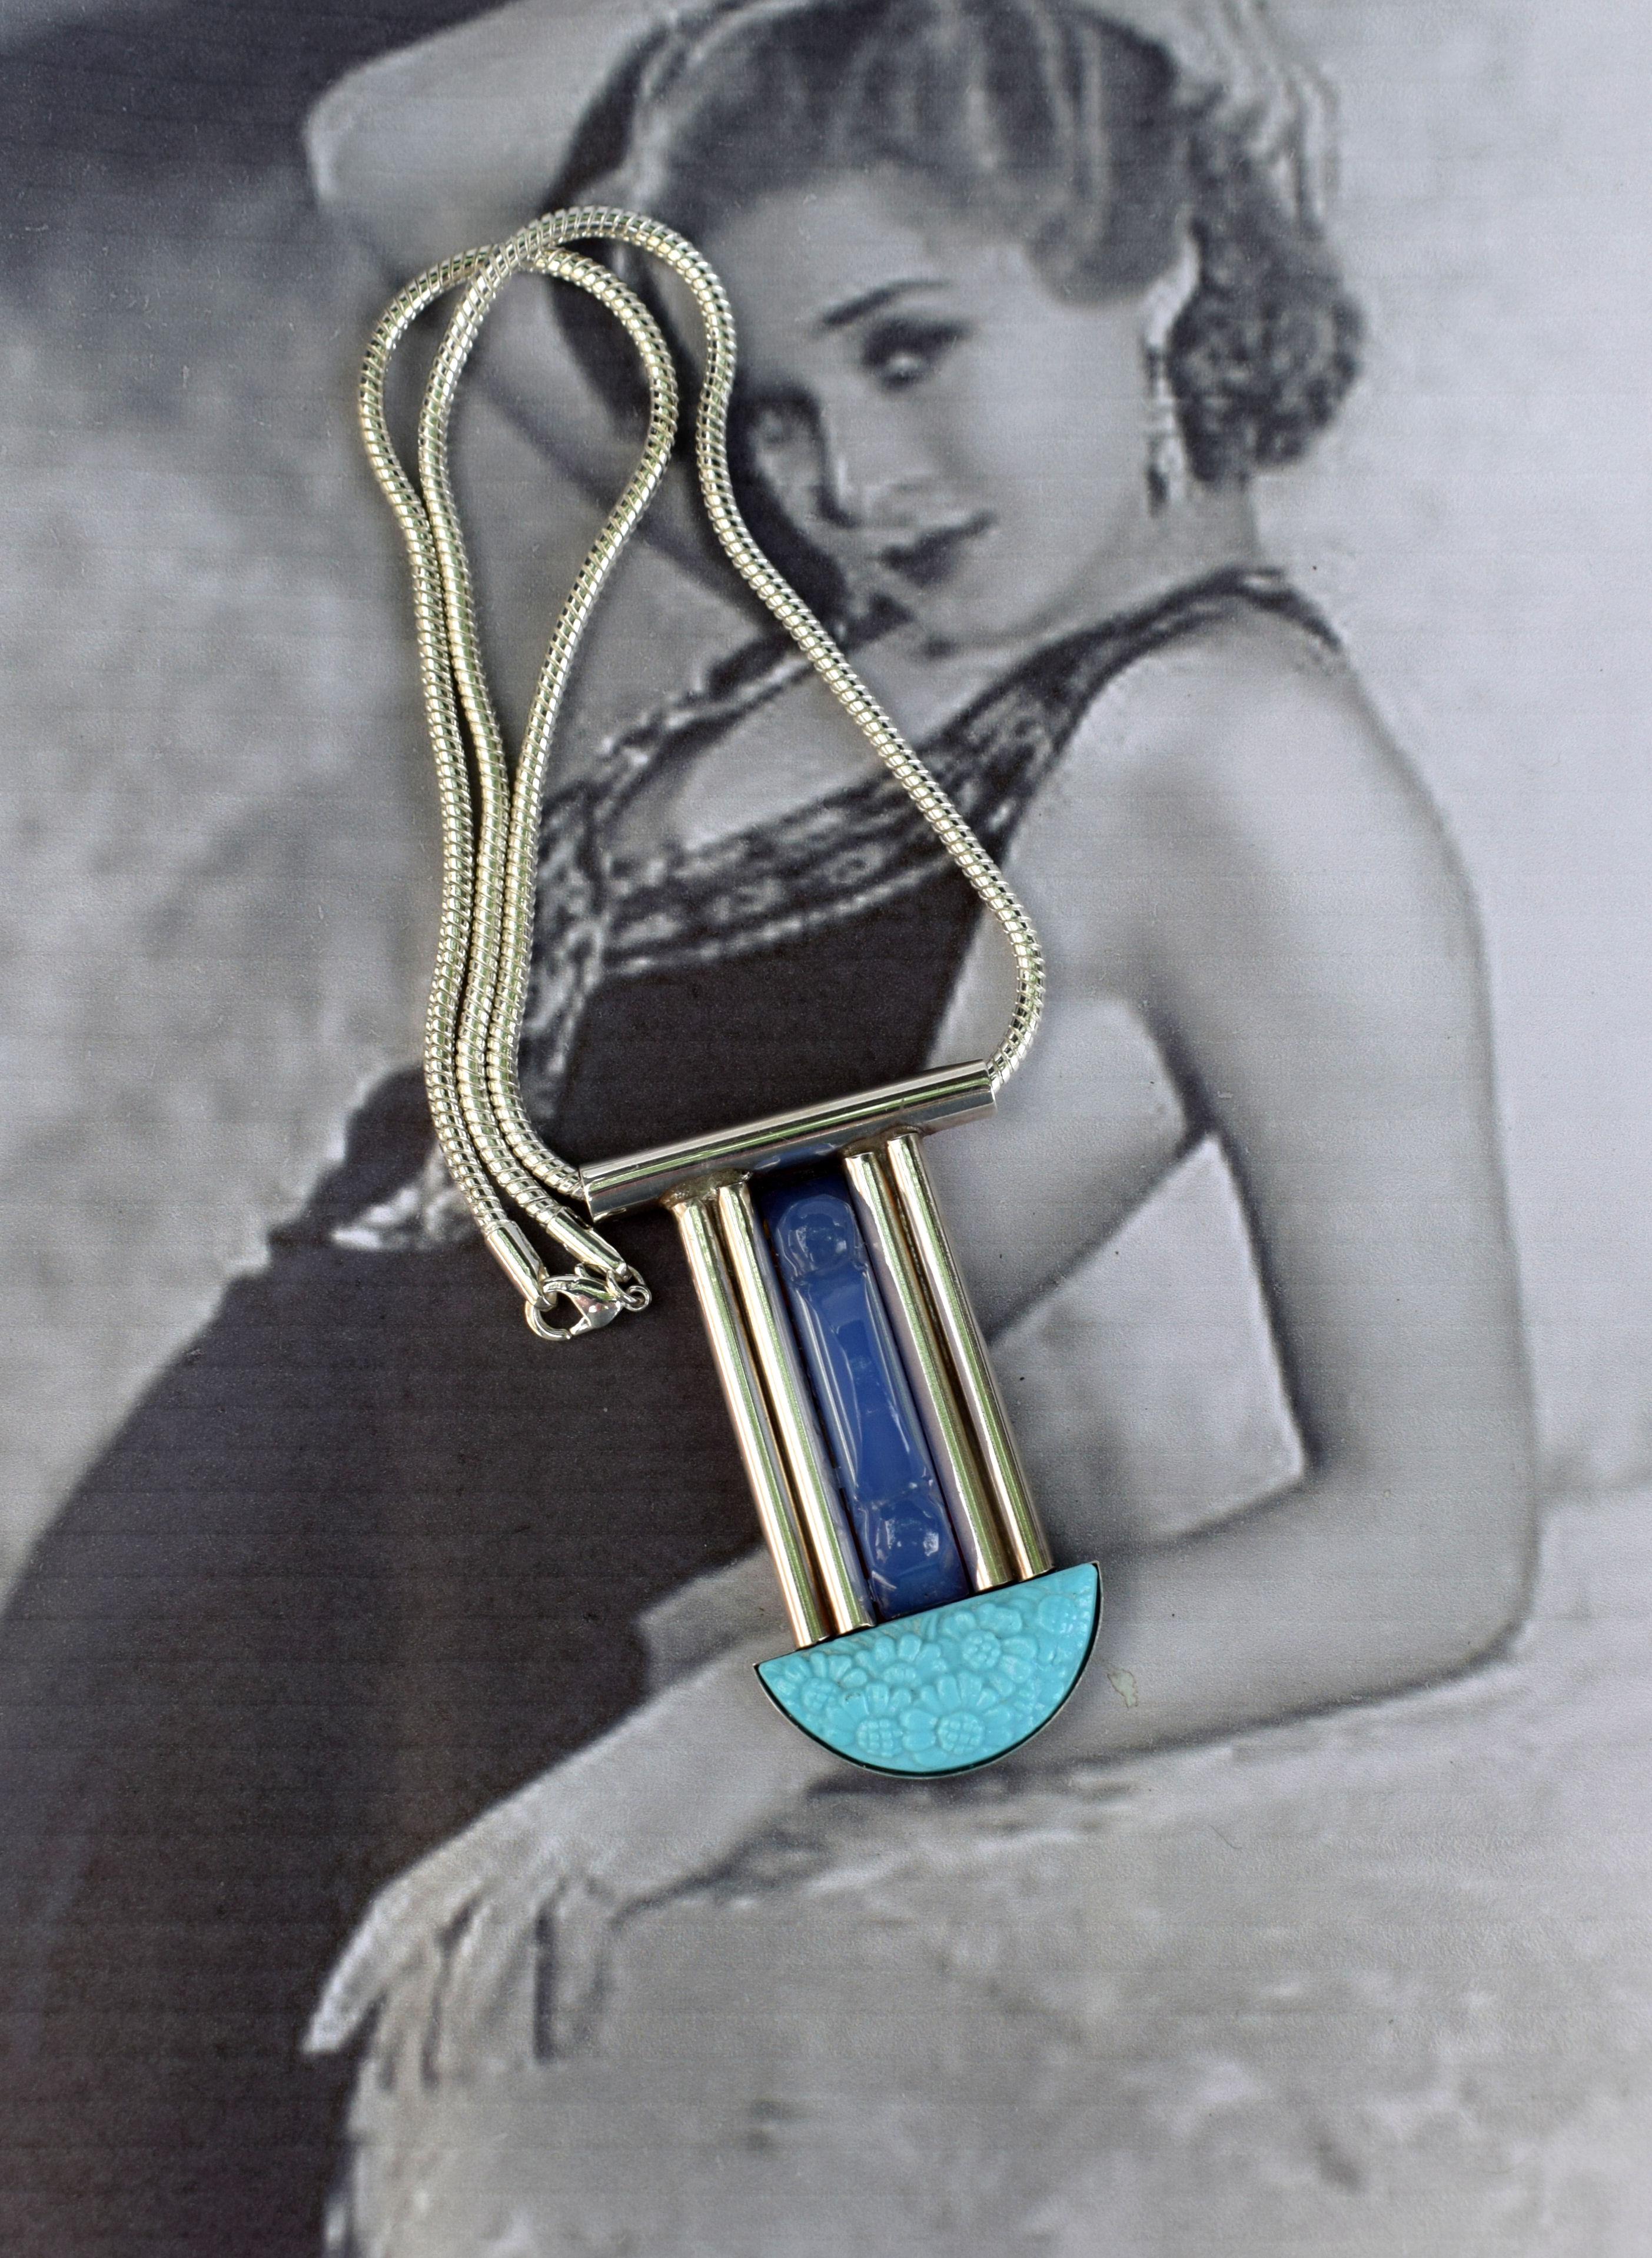 Fabelhafter französischer Modernist  Art-Deco-Halskette mit Anhänger. Diese Halskette ist so elegant und stilvoll, perfekt für einen eleganten Abend oder eine böhmische Tageskleidung. Mit blauem Lapislazuli in der Mitte und einer blauen